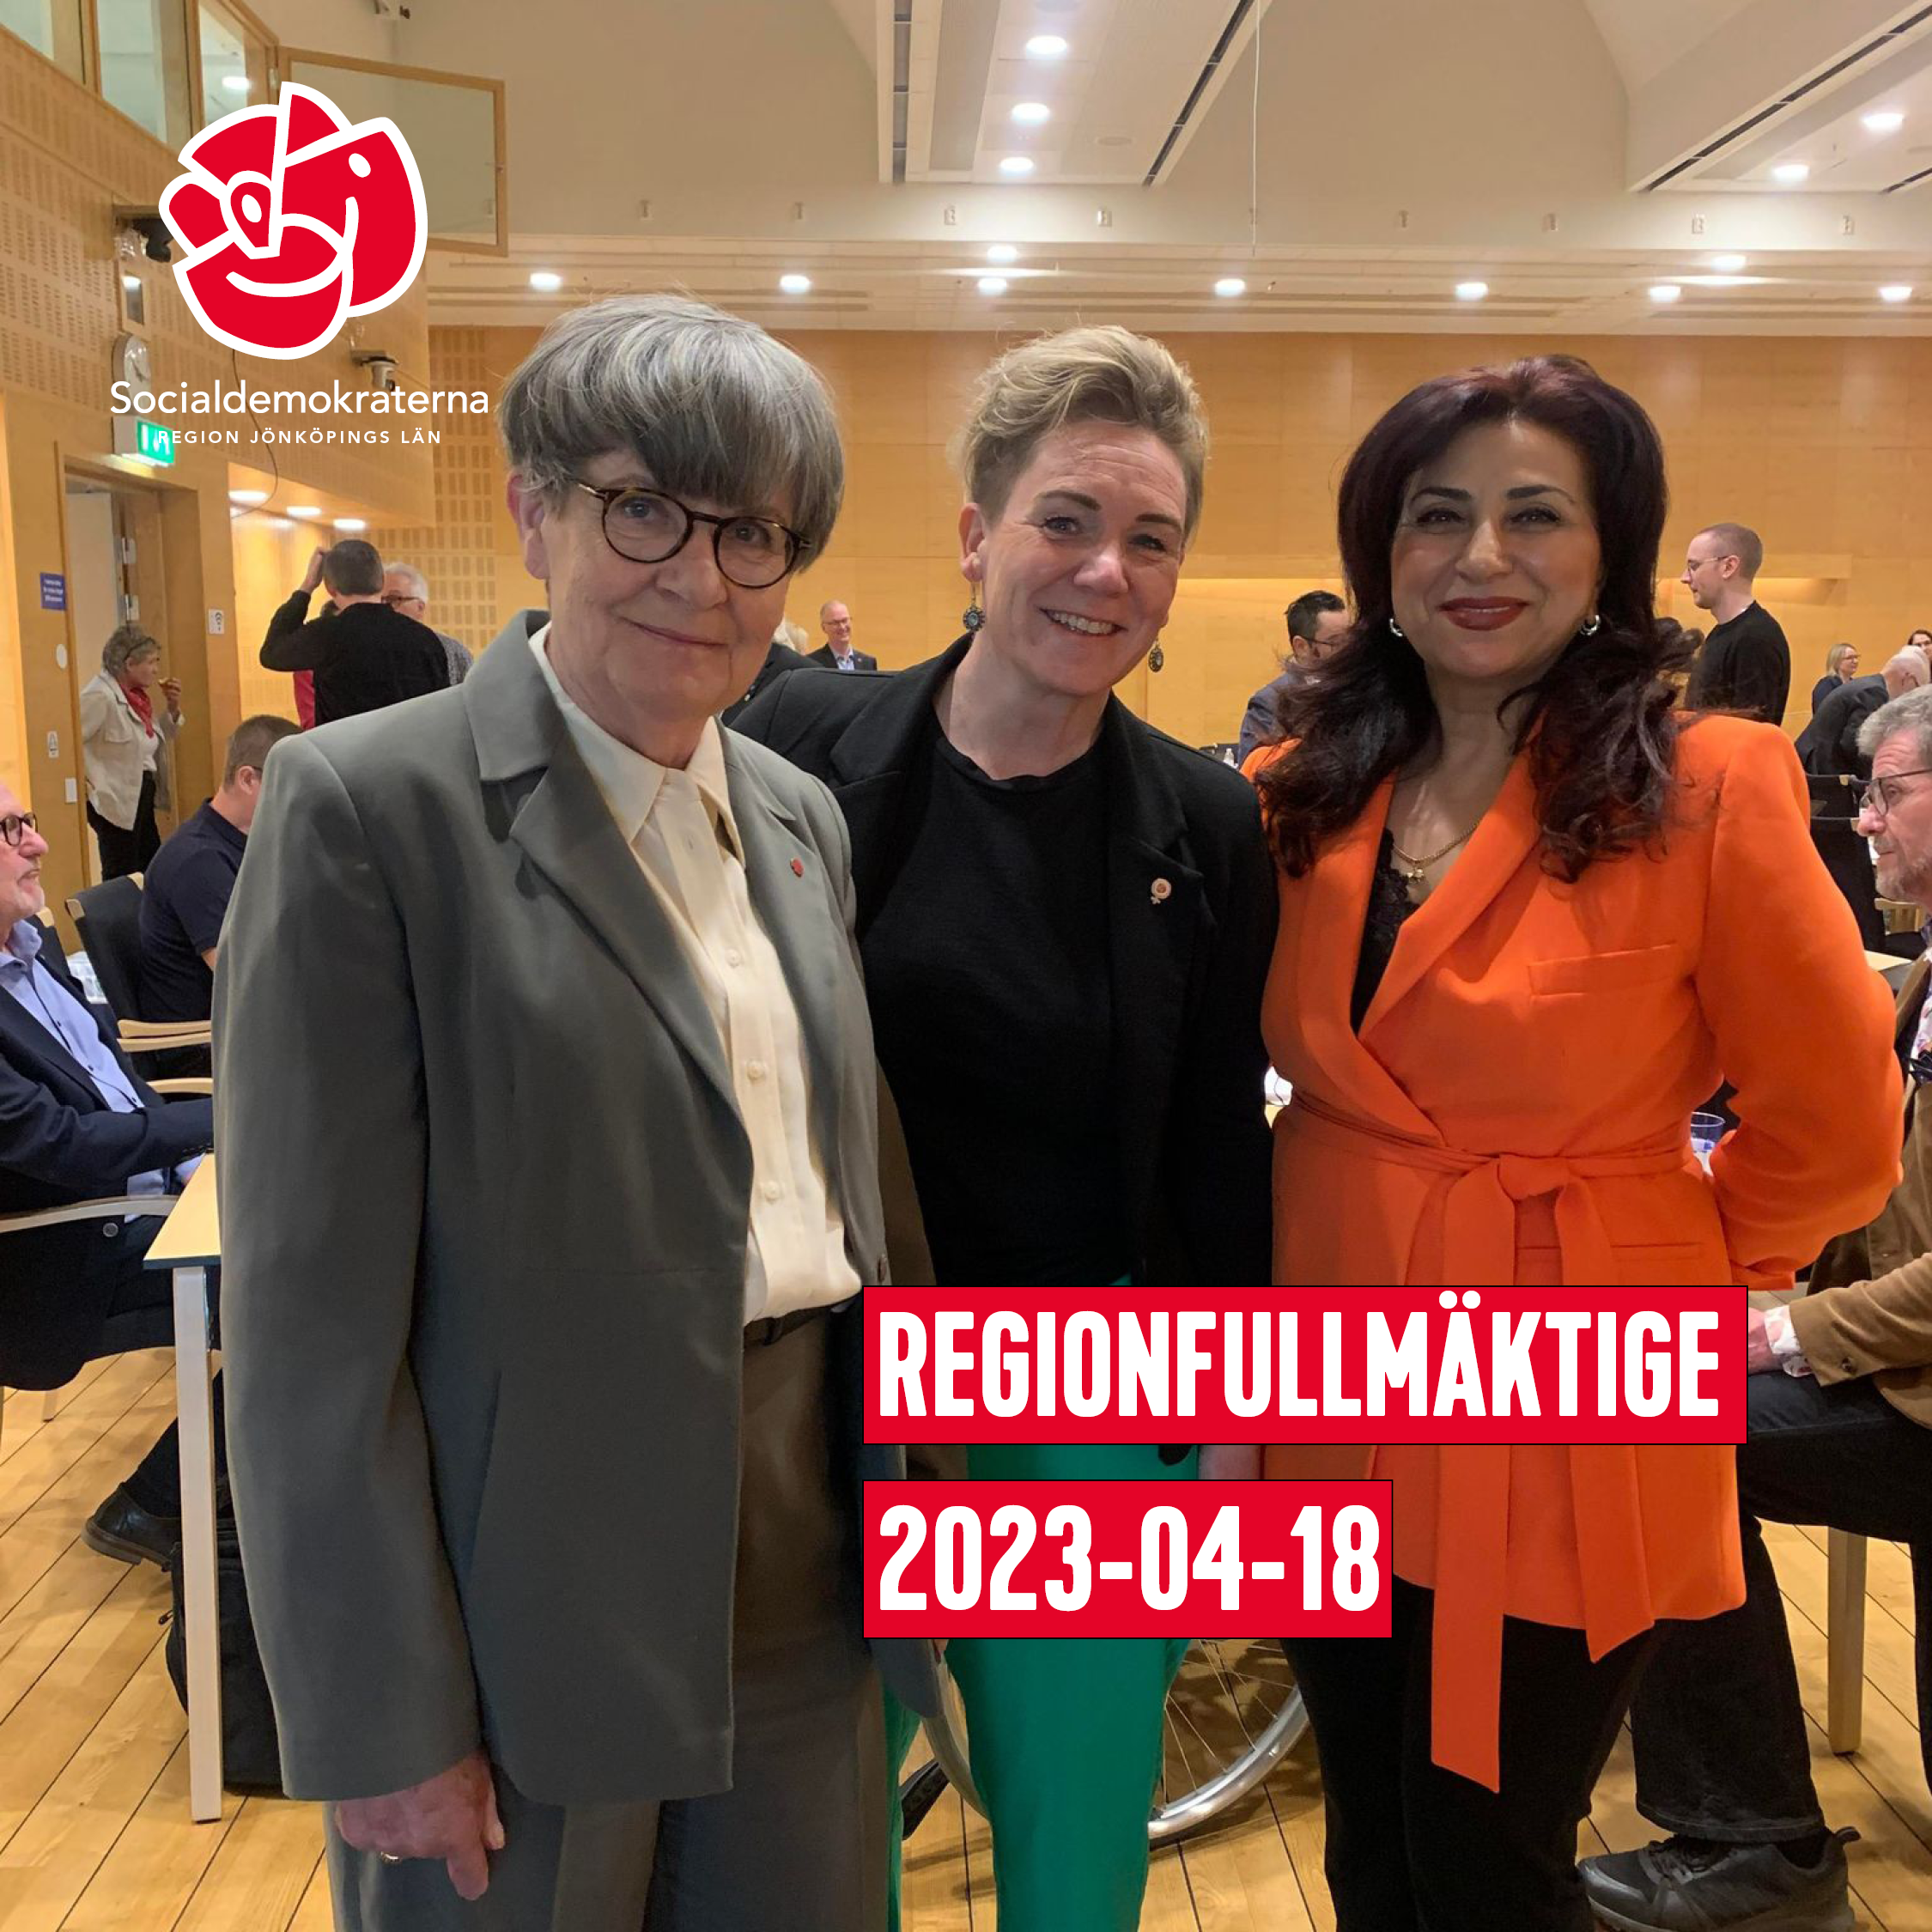 Bild från regionfullmäktige. Ni ser ledamöterna Jeanette Söderström, Liza Oswald och Irada Söderberg.